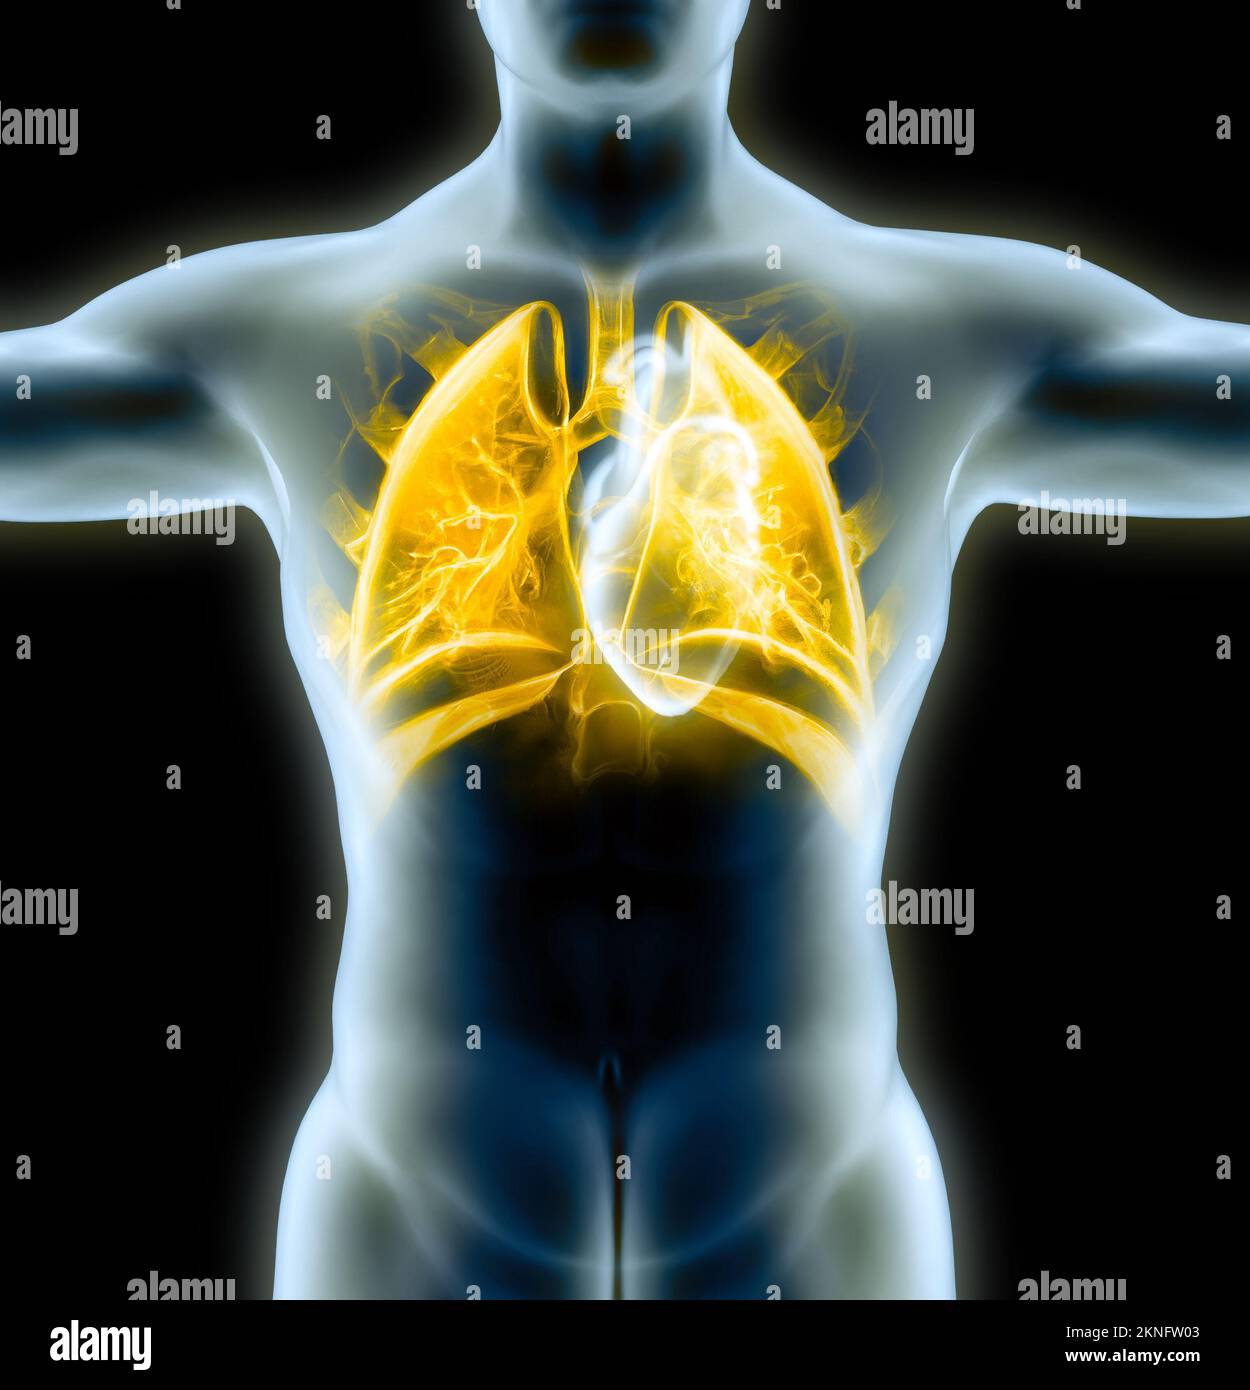 Anatomia umana, problemi al sistema respiratorio, polmoni gravemente danneggiati. Polmonite bilaterale. Covid-19, coronavirus. Paziente e fumo. Fumatore Foto Stock